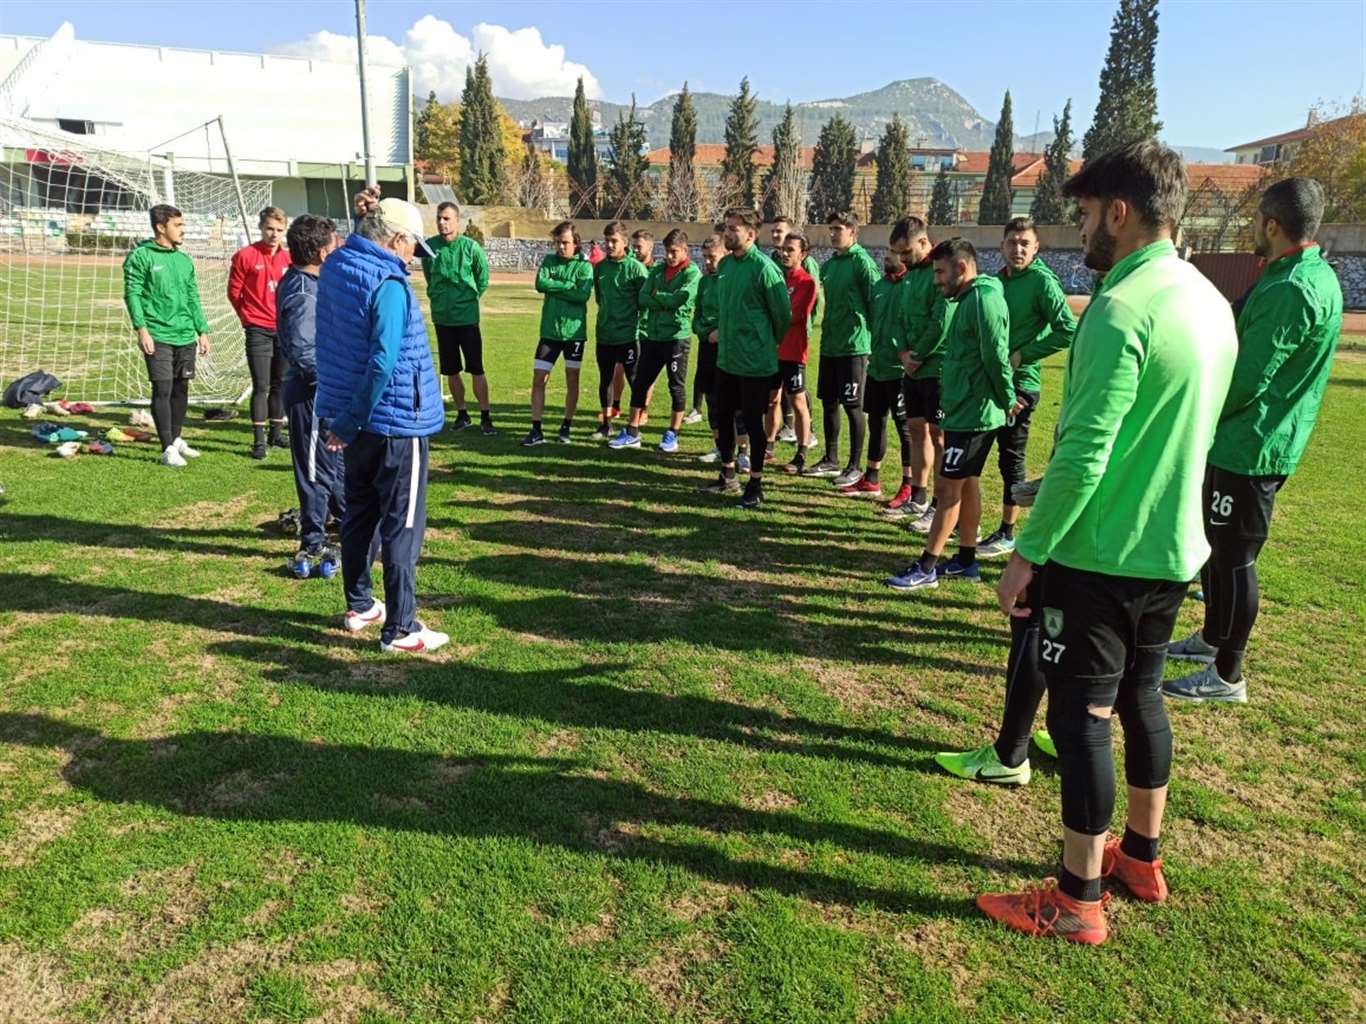    Siirt maçı hazırlıkları Muğla Atatürk Stadı'nda devam etti haberi